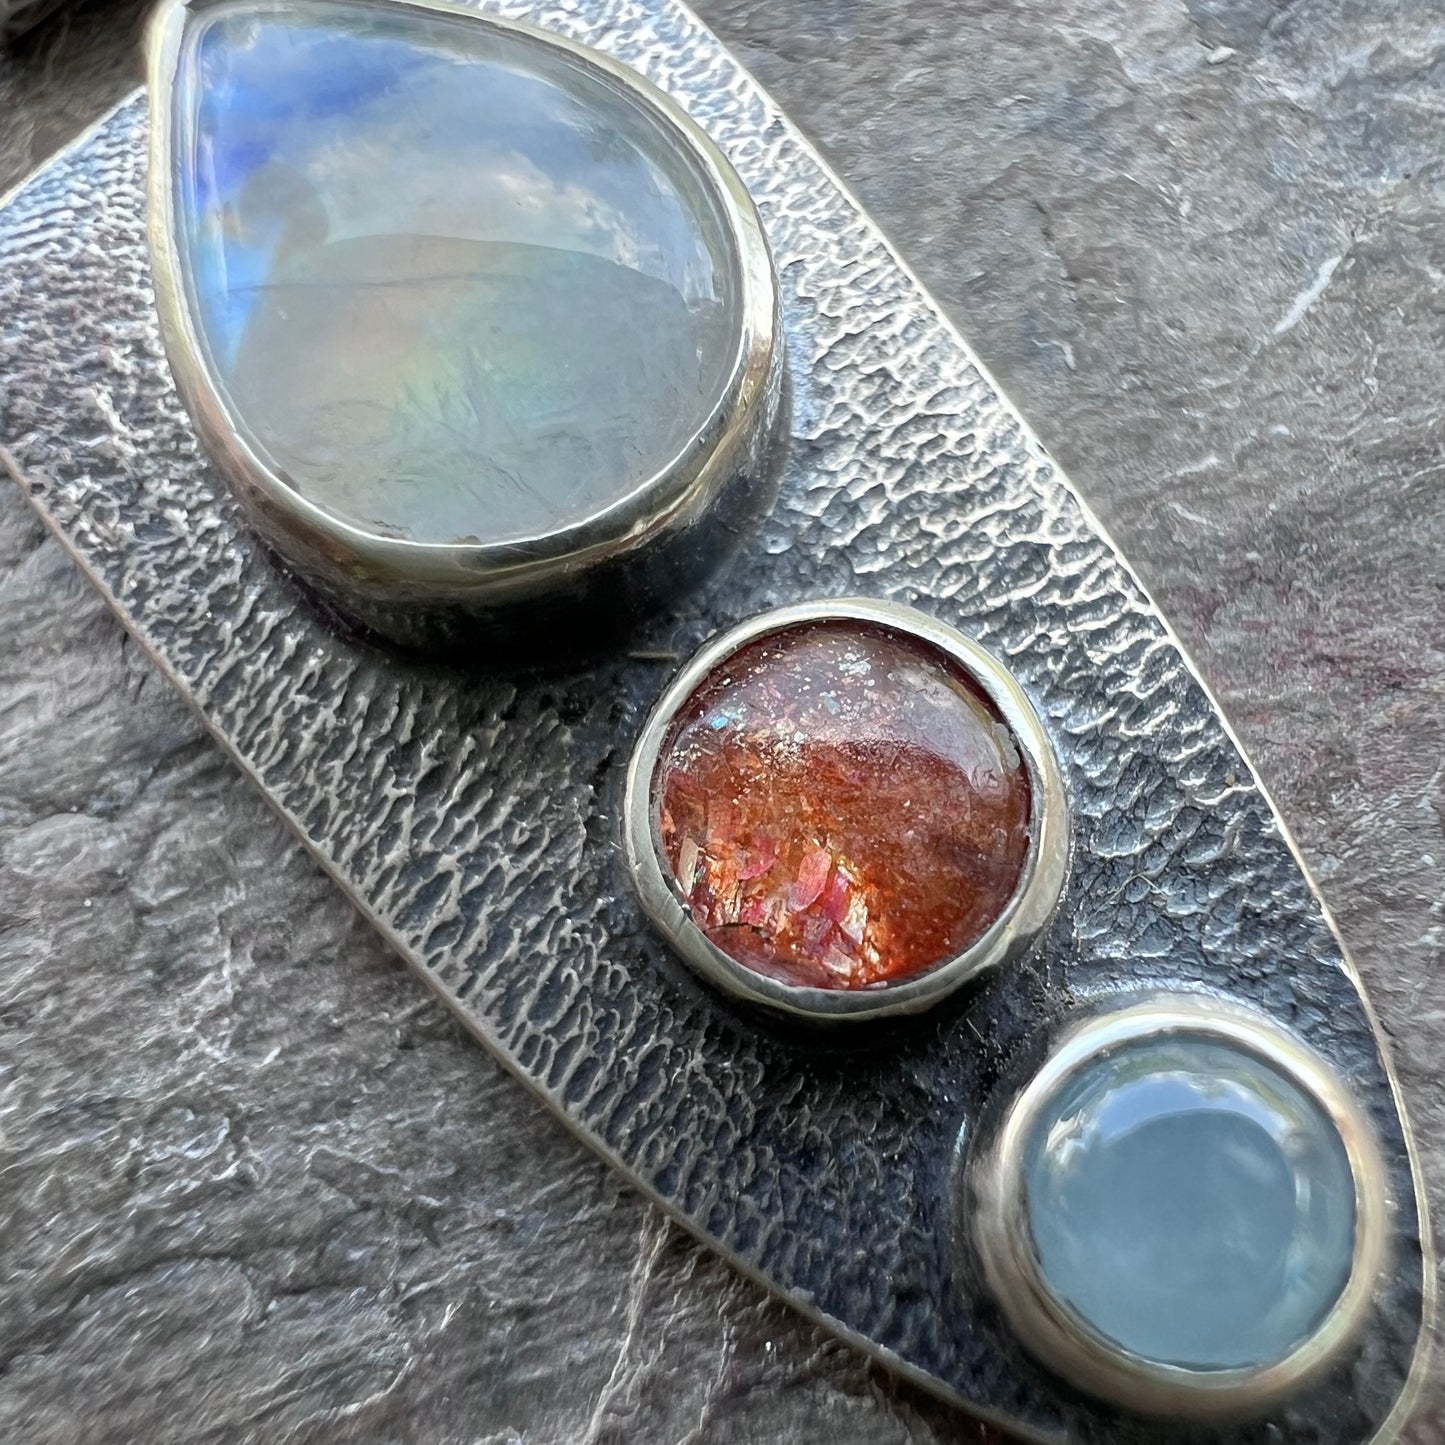 Rainbow Moonstone, Sunstone, and Aquamarine Pendant - Handmade One-of-a-kind Pendant